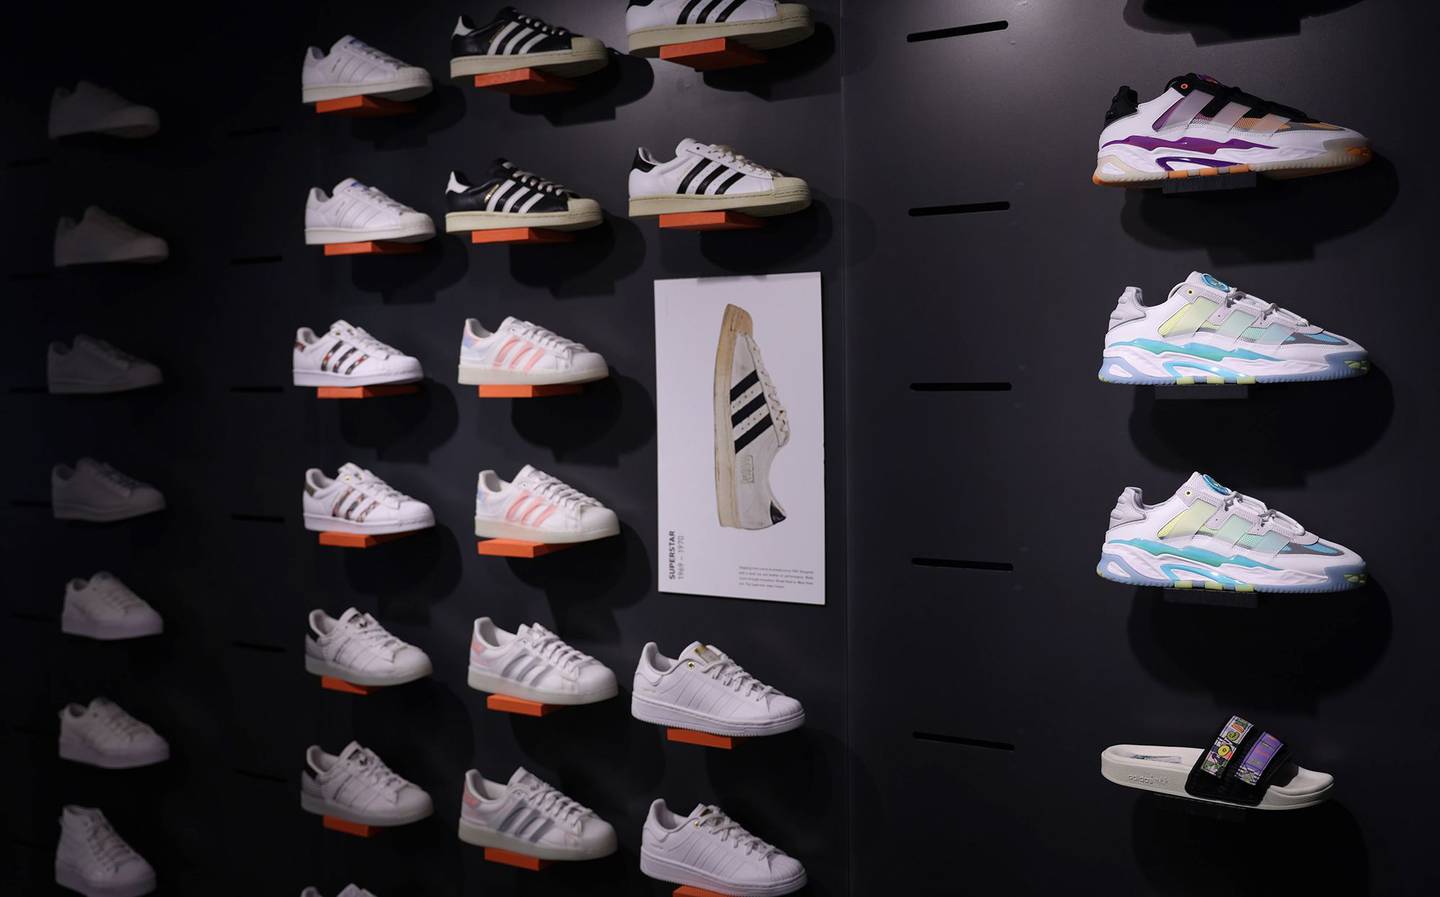 Zapatos Adidas no se están vendiendo y la baja demanda afectando las ganancias